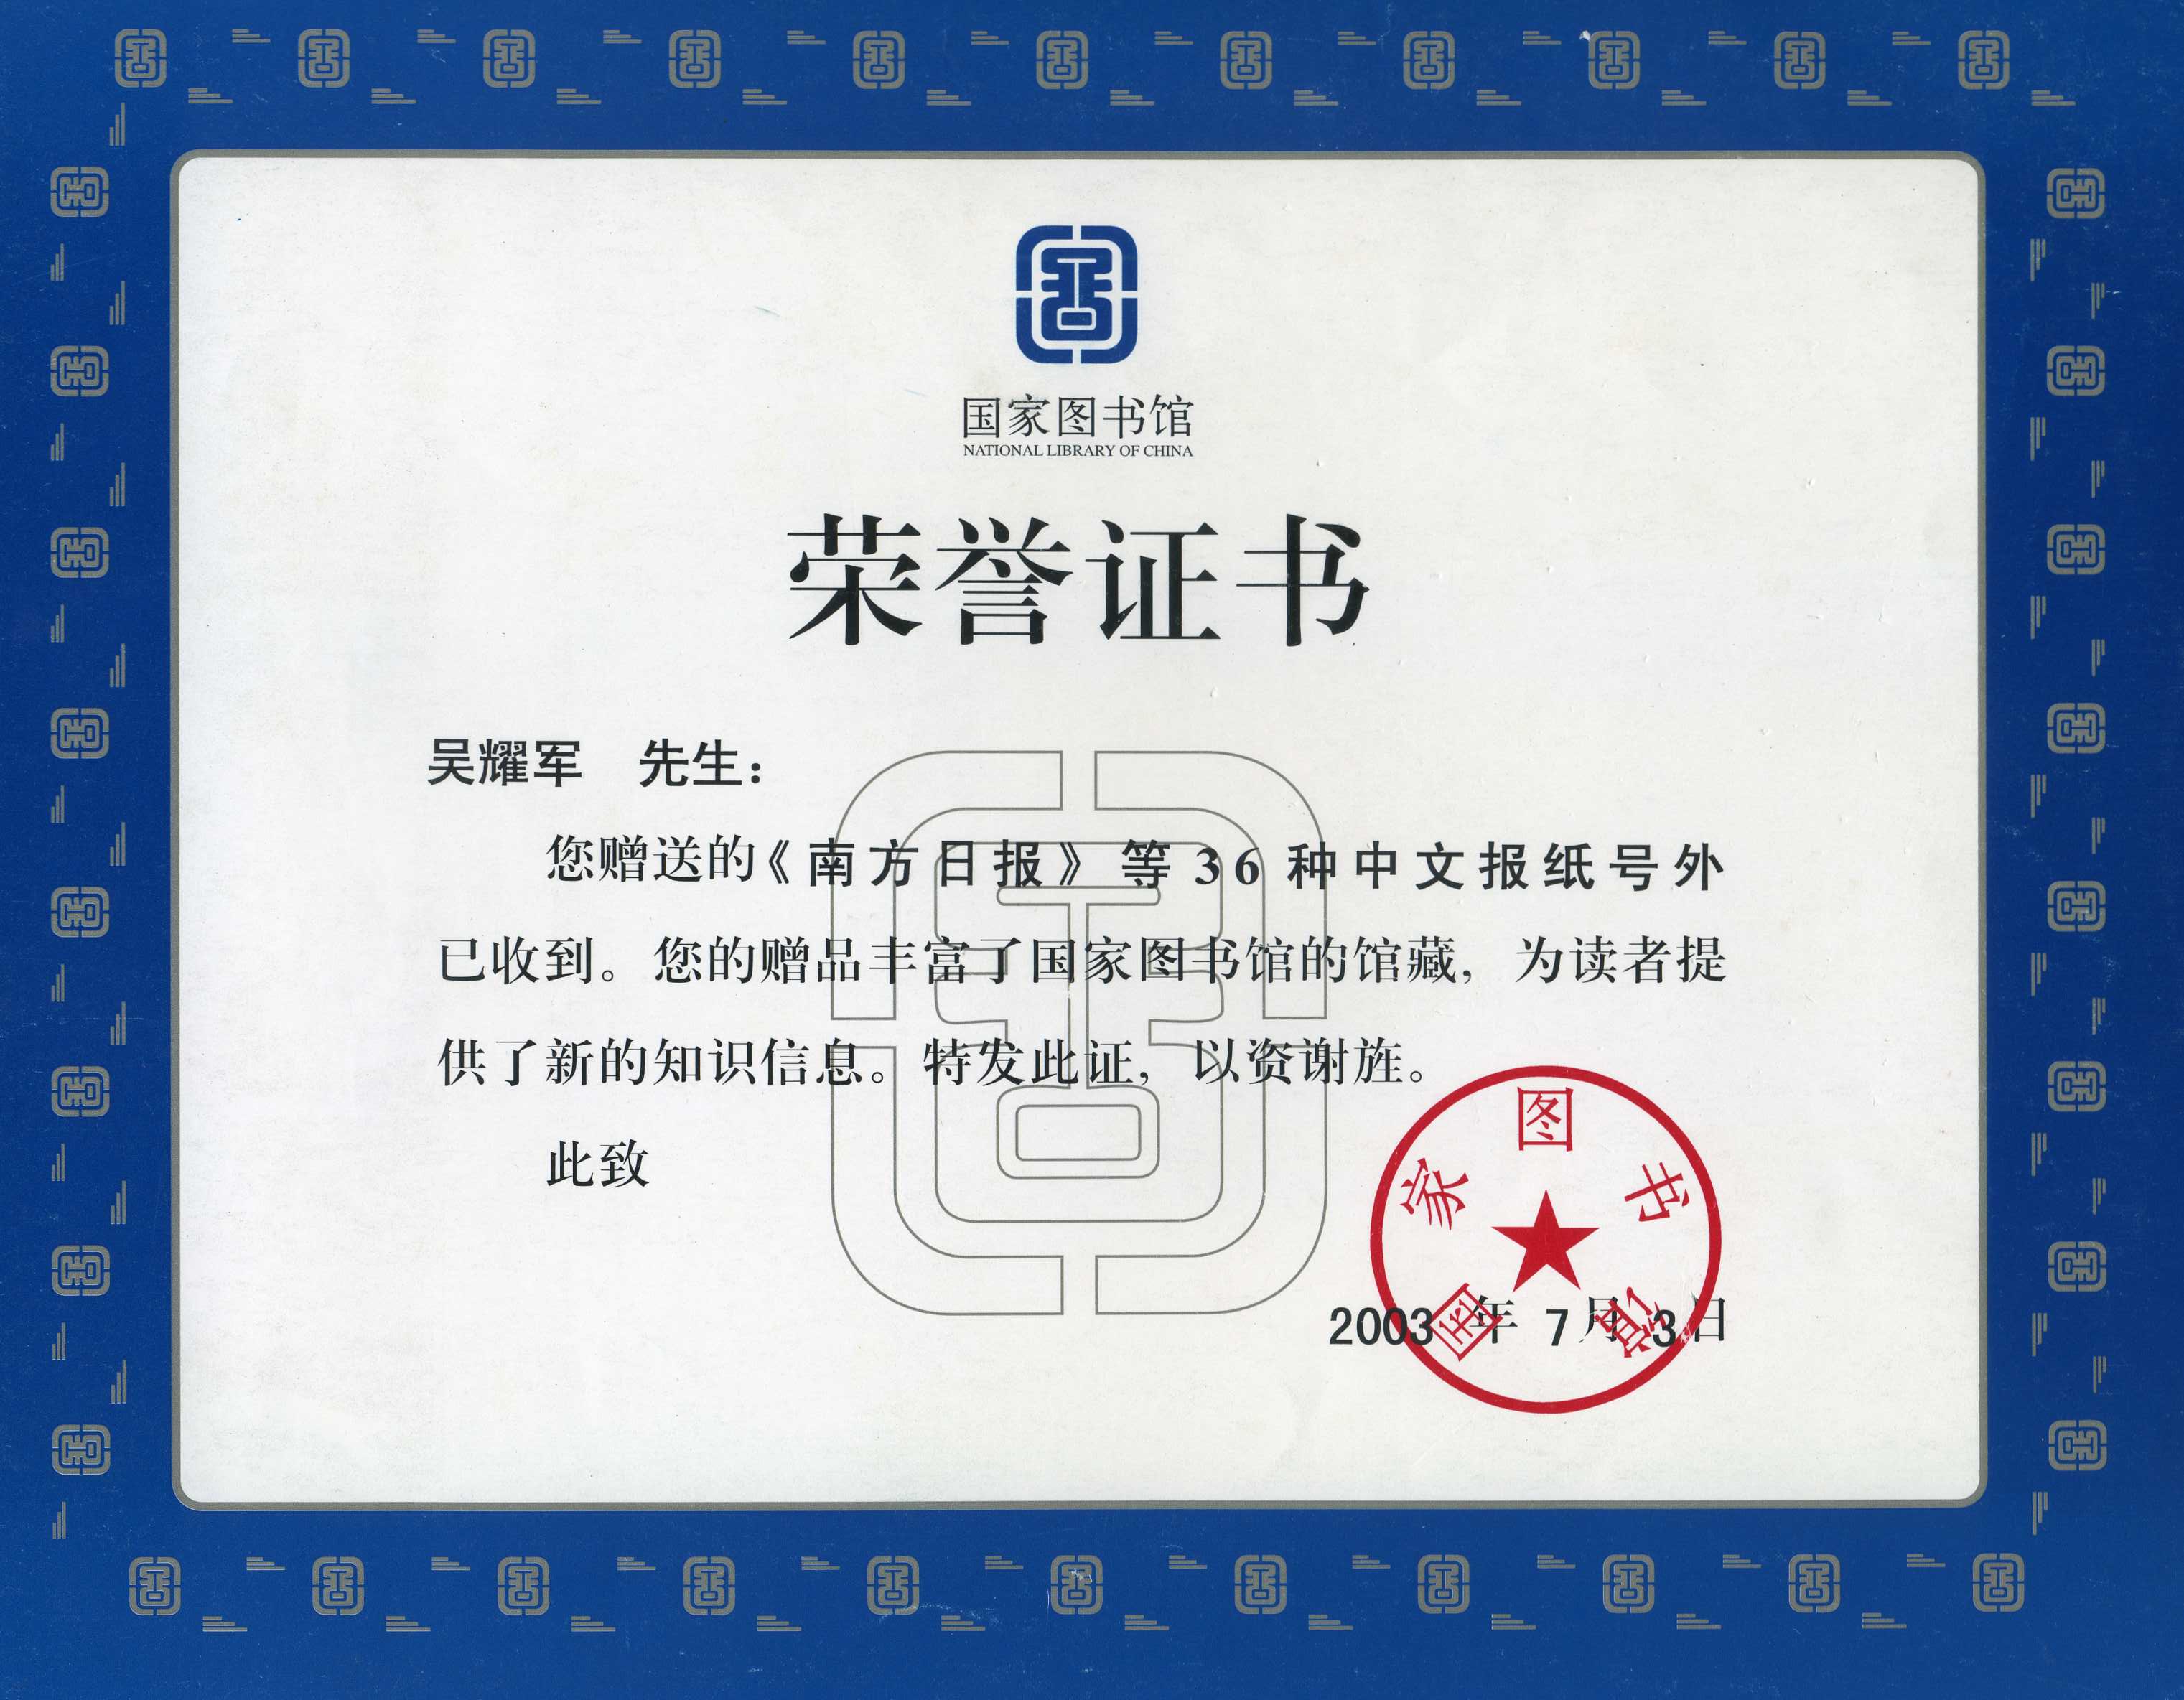 03年國家圖書館為吳耀軍頒發的榮譽證書